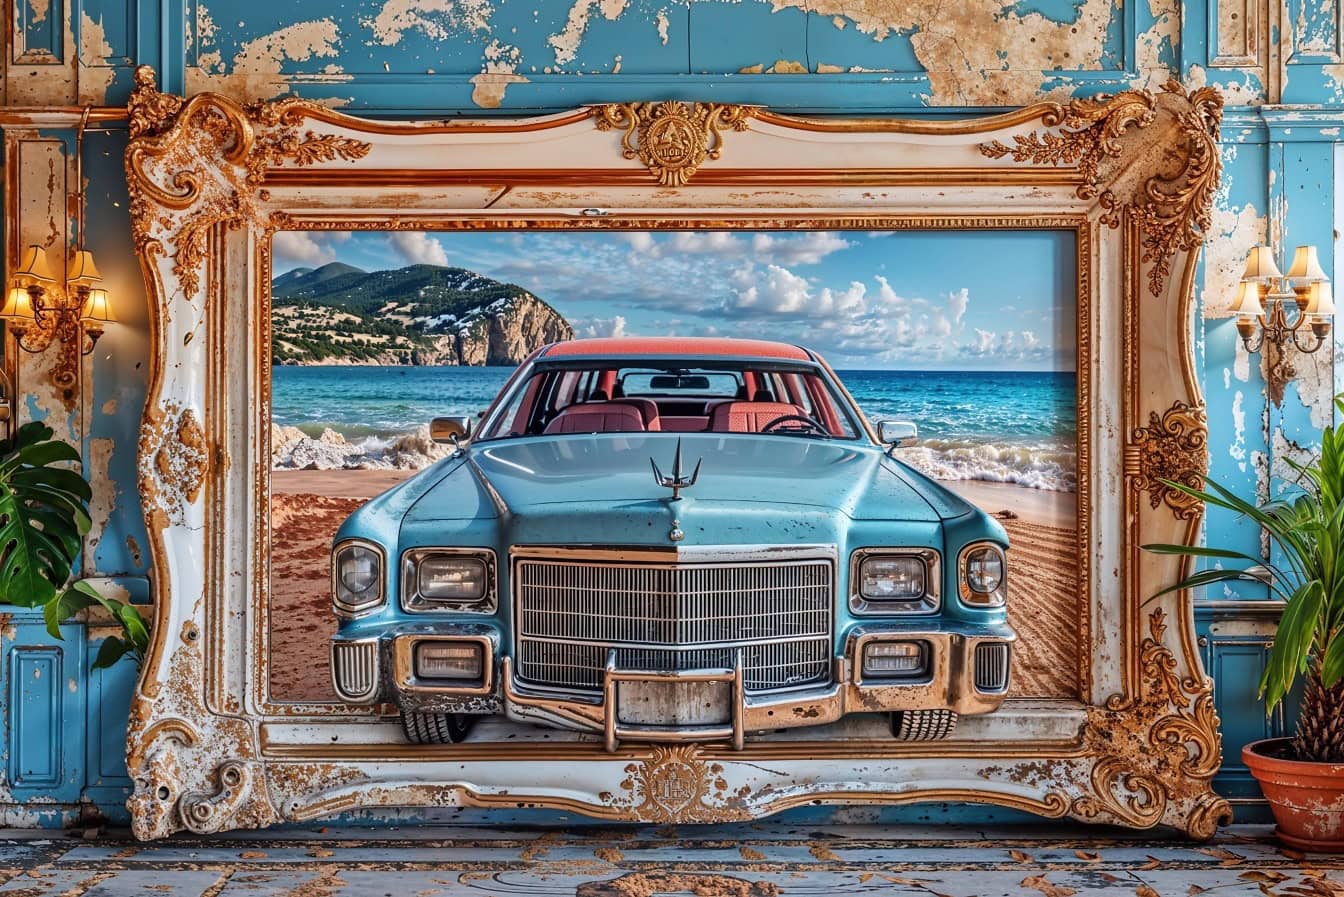 O imagine 3D mare a unei mașini clasice americane Cadillac atârnă pe un perete într-un cadru victorian vechi